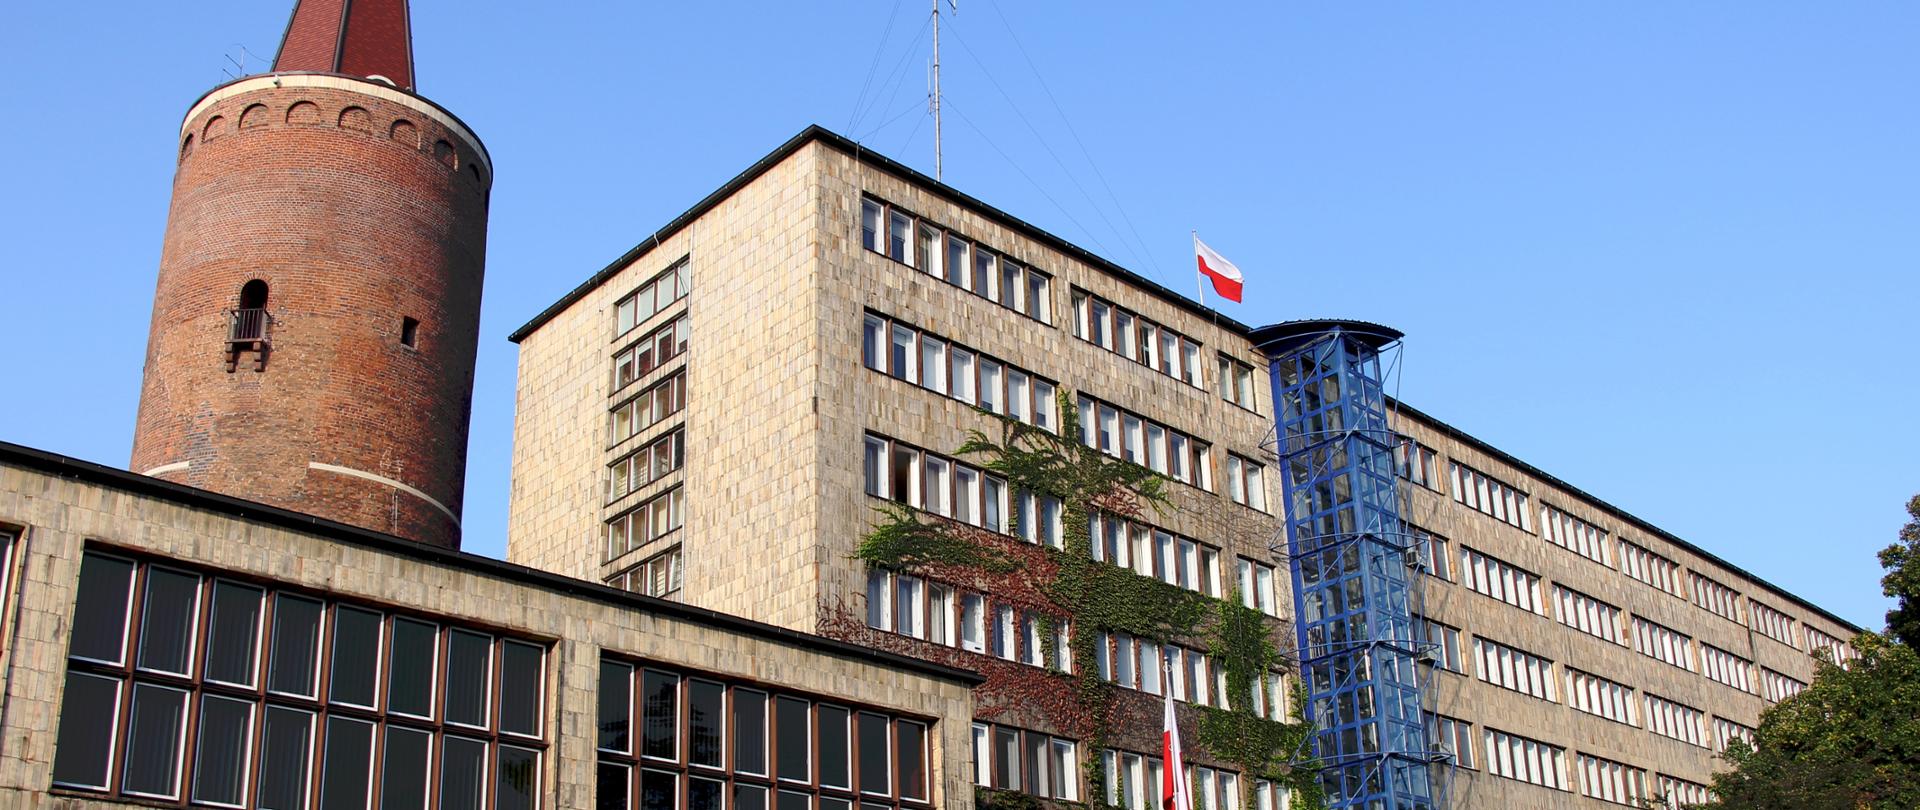 Budynek Opolskiego Urzędu Wojewódzkiego, wejście główne od strony ulicy Piastowskiej. Za budynkiem Wieża Piastowska.